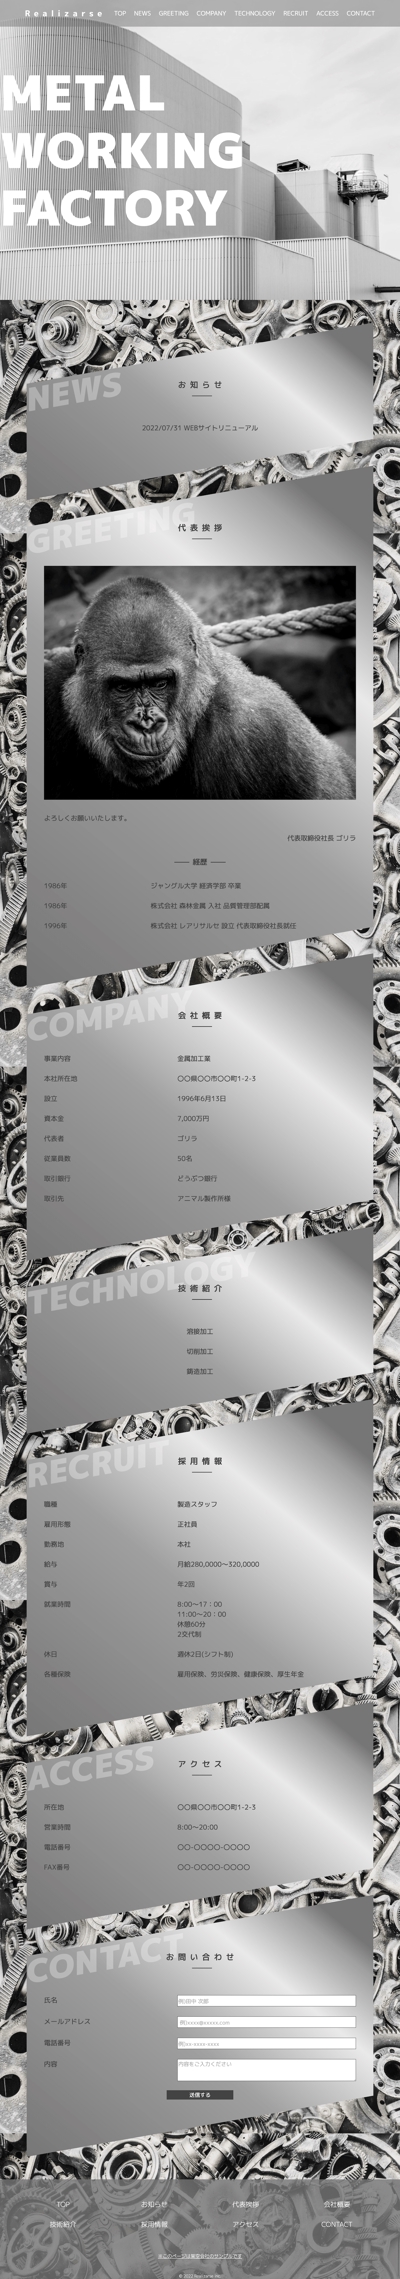 金属加工工場のランディングページサンプル(PC)